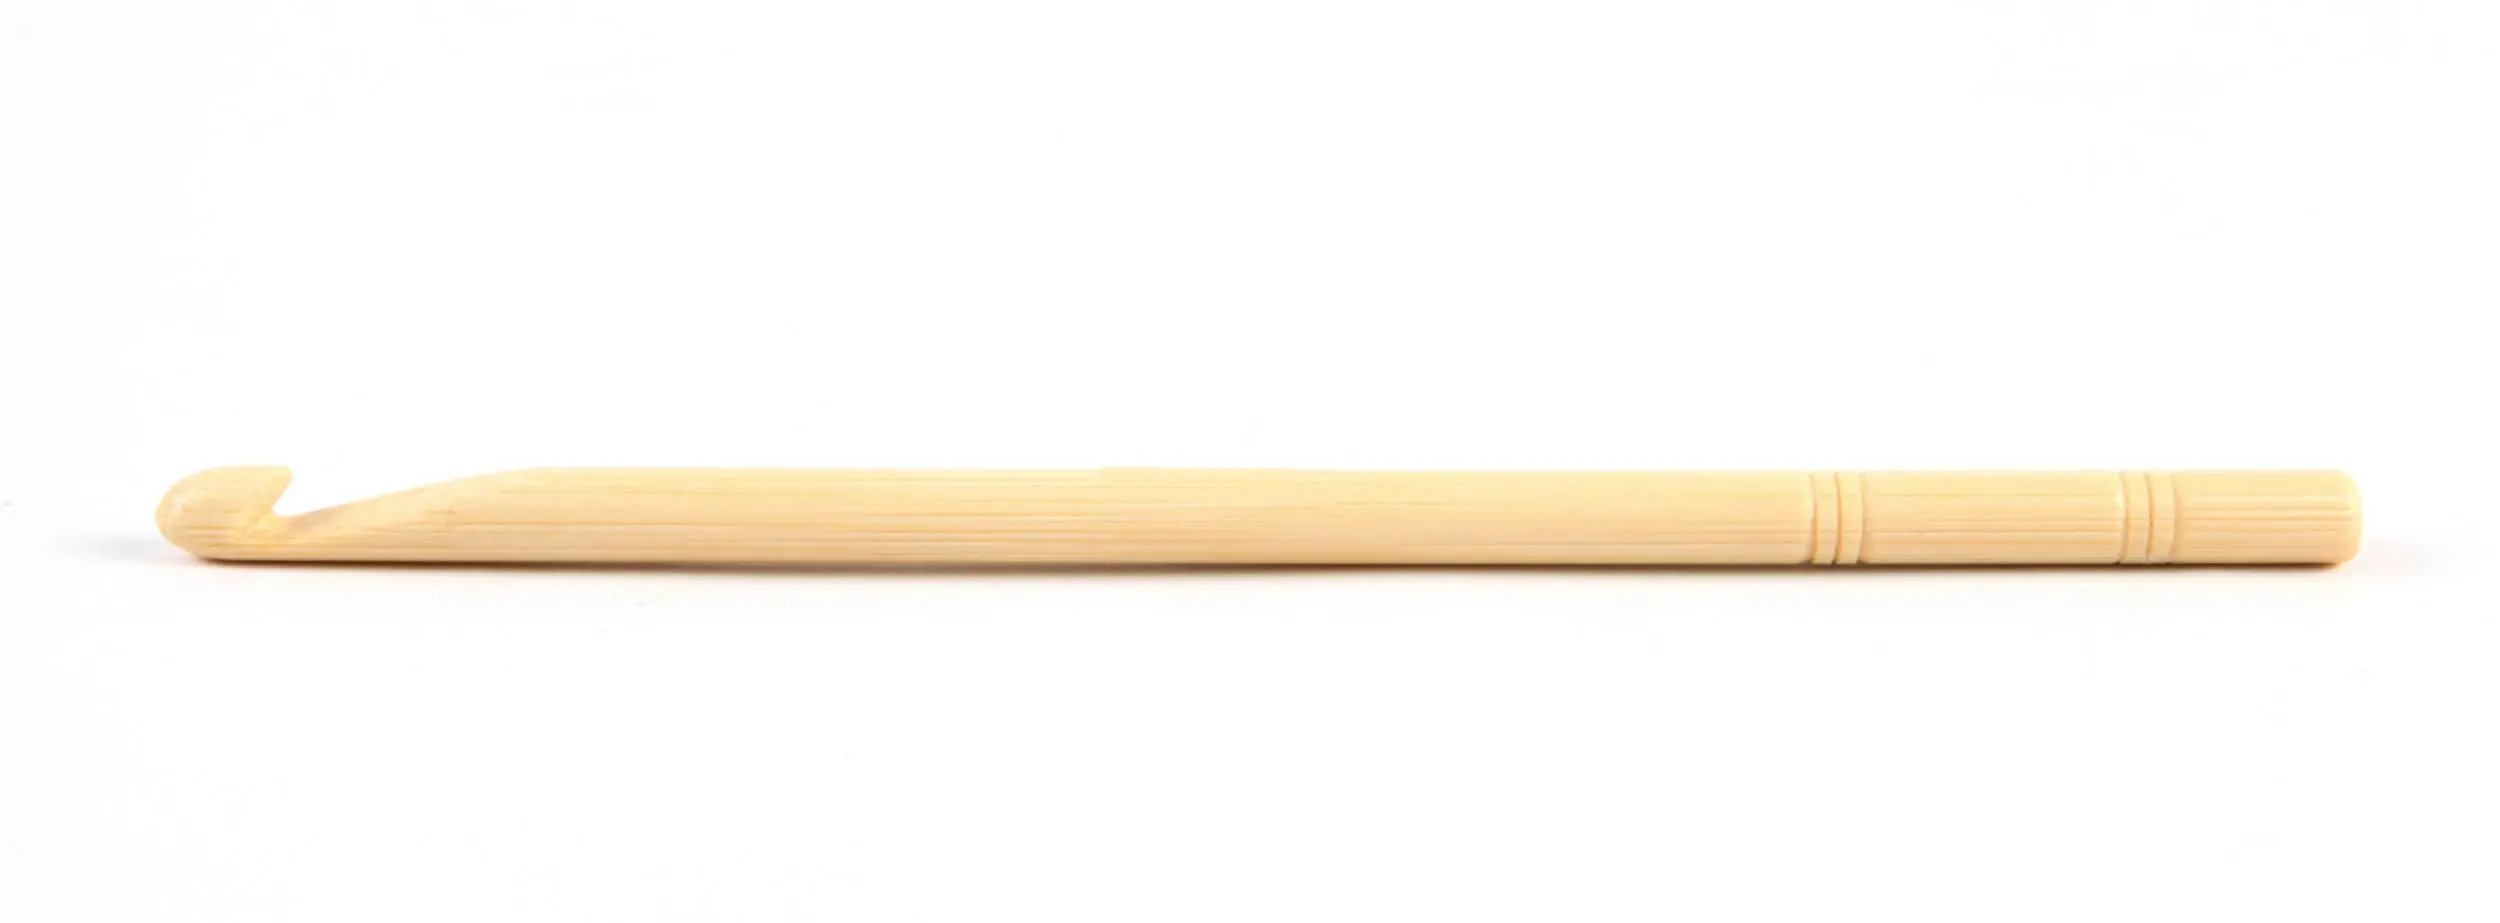 22509 Крючок бамбуковий KnitPro, 7.00 мм